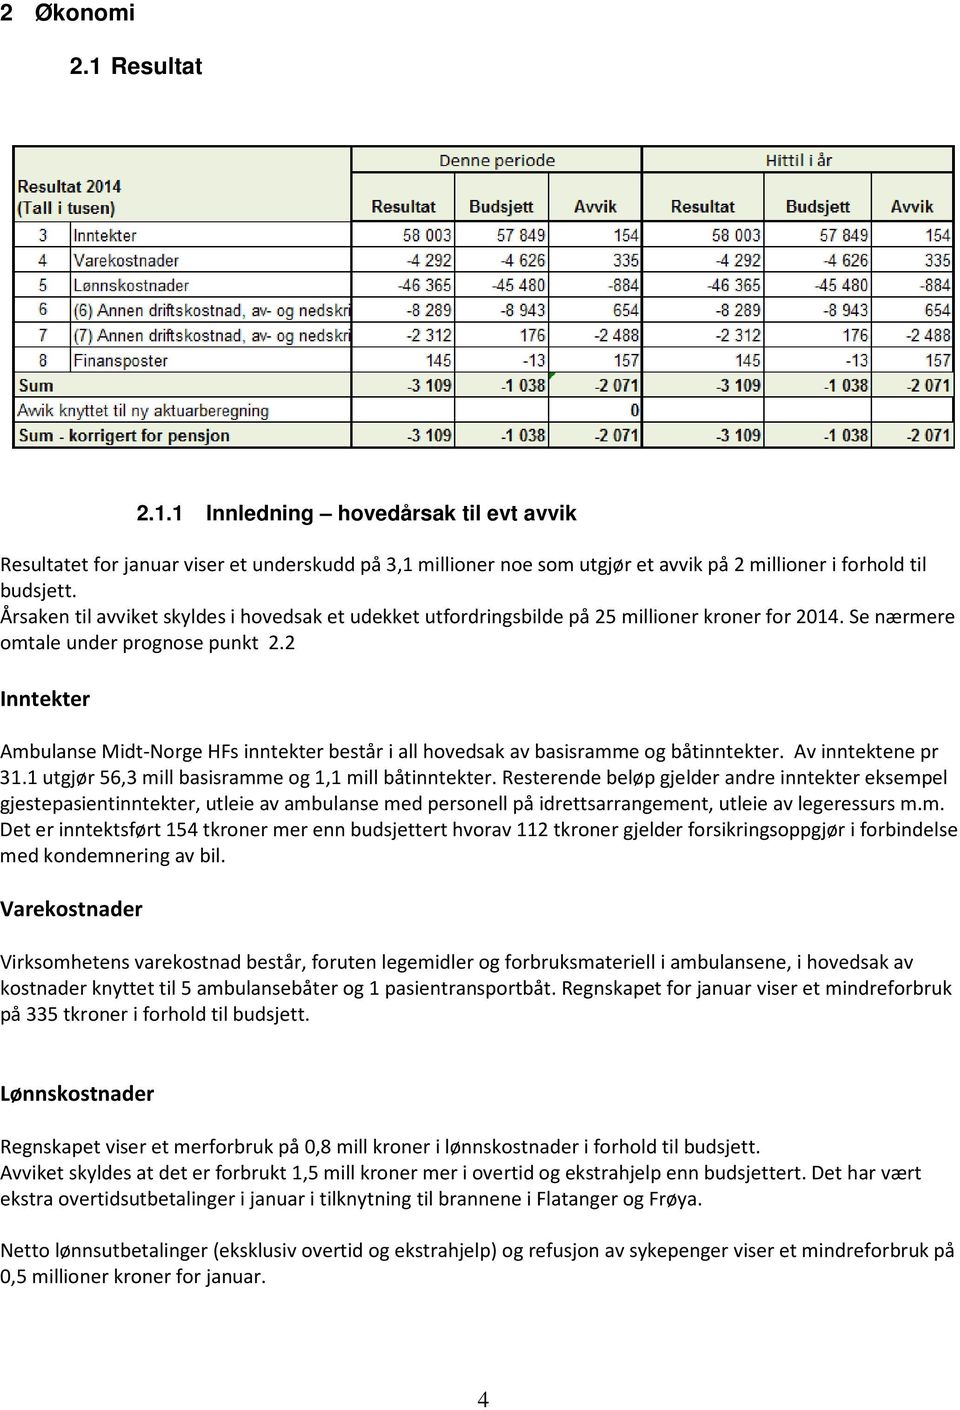 2 Inntekter Ambulanse Midt-Norge HFs inntekter består i all hovedsak av basisramme og båtinntekter. Av inntektene pr 31.1 utgjør 56,3 mill basisramme og 1,1 mill båtinntekter.